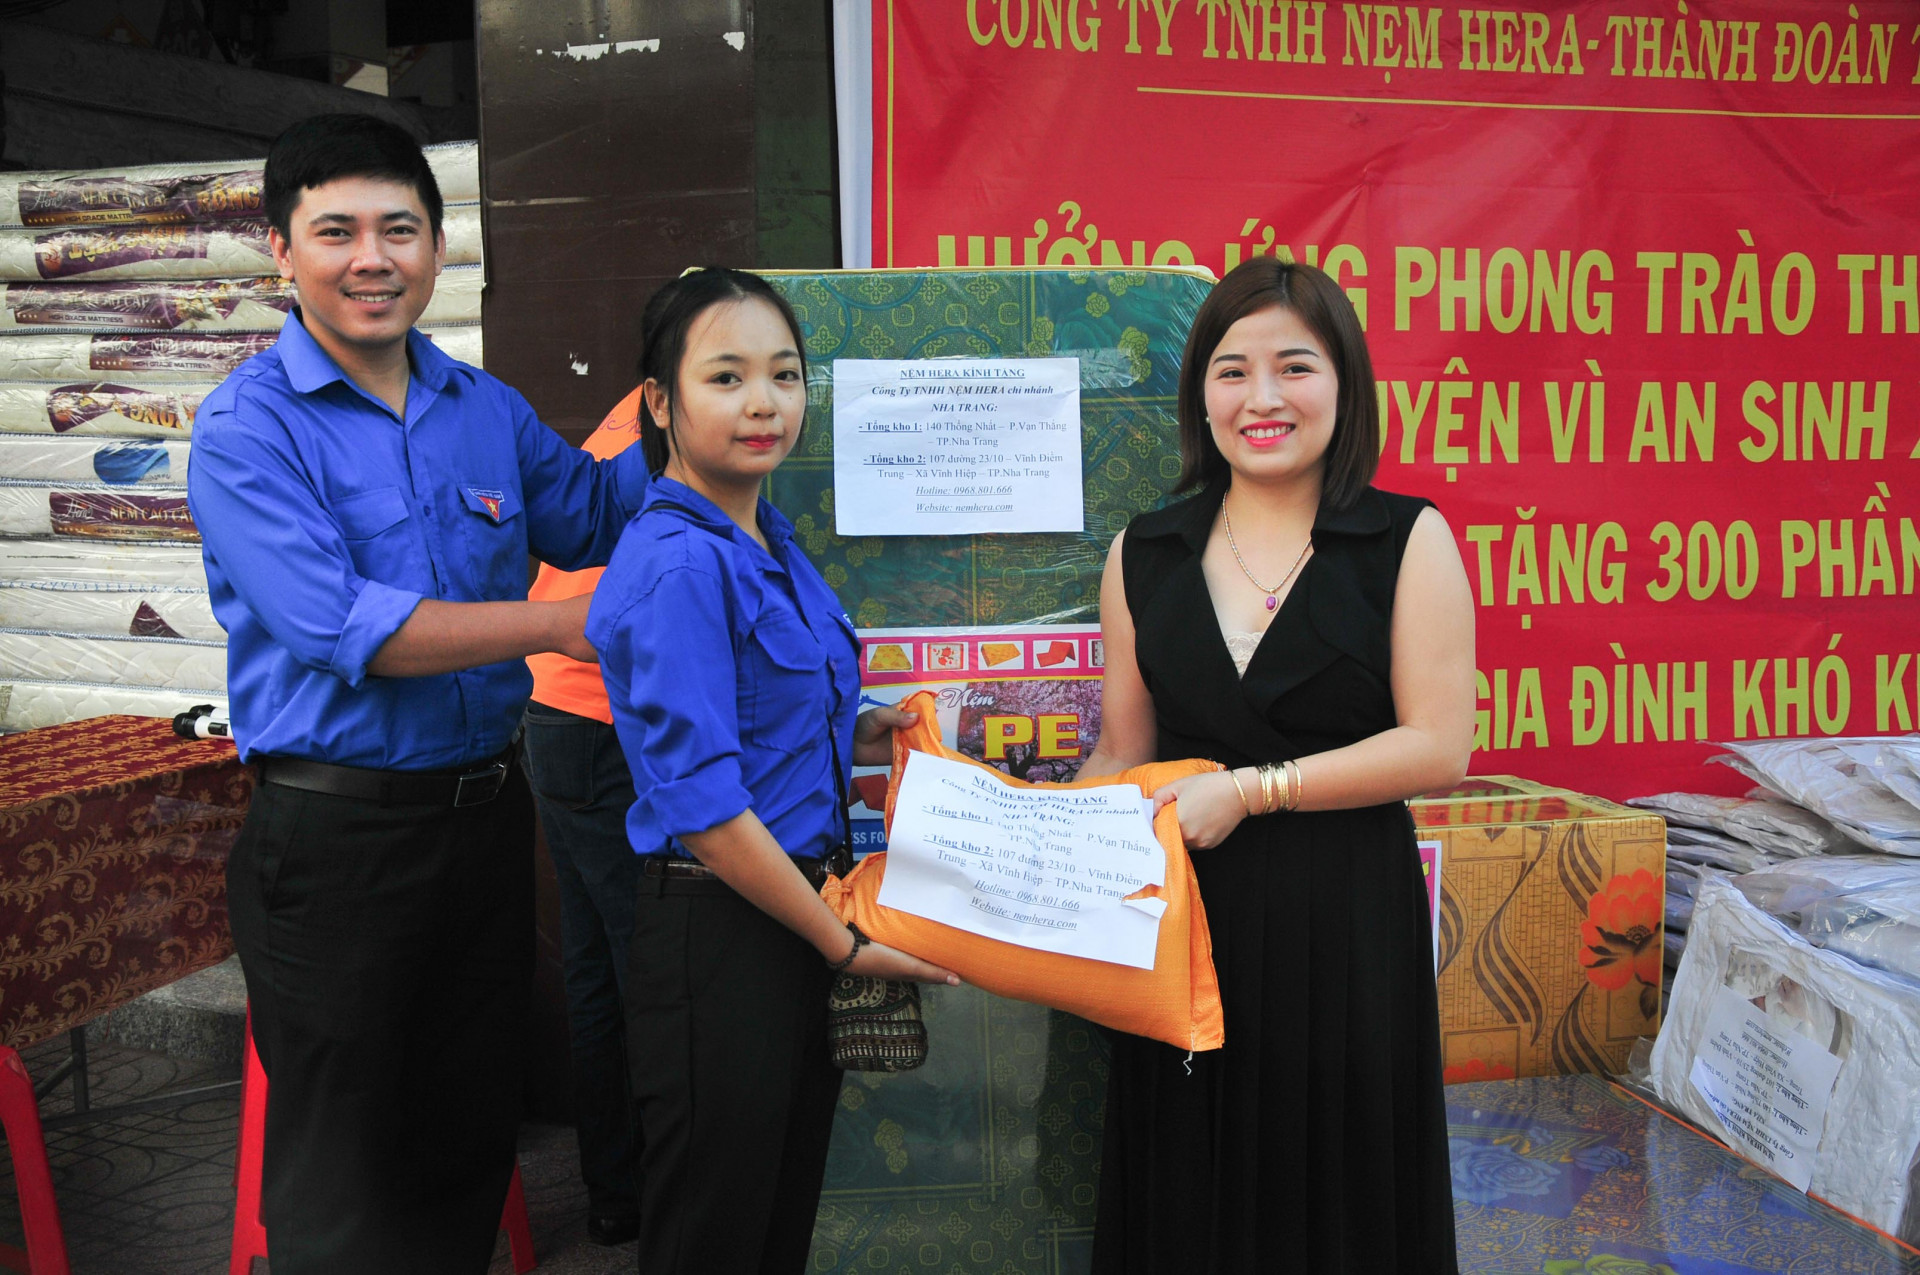 Công ty TNHH Nệm Hera cùng Thành đoàn Nha Trang trao quà cho đoàn viên, thanh niên có hoàn cảnh khó khăn